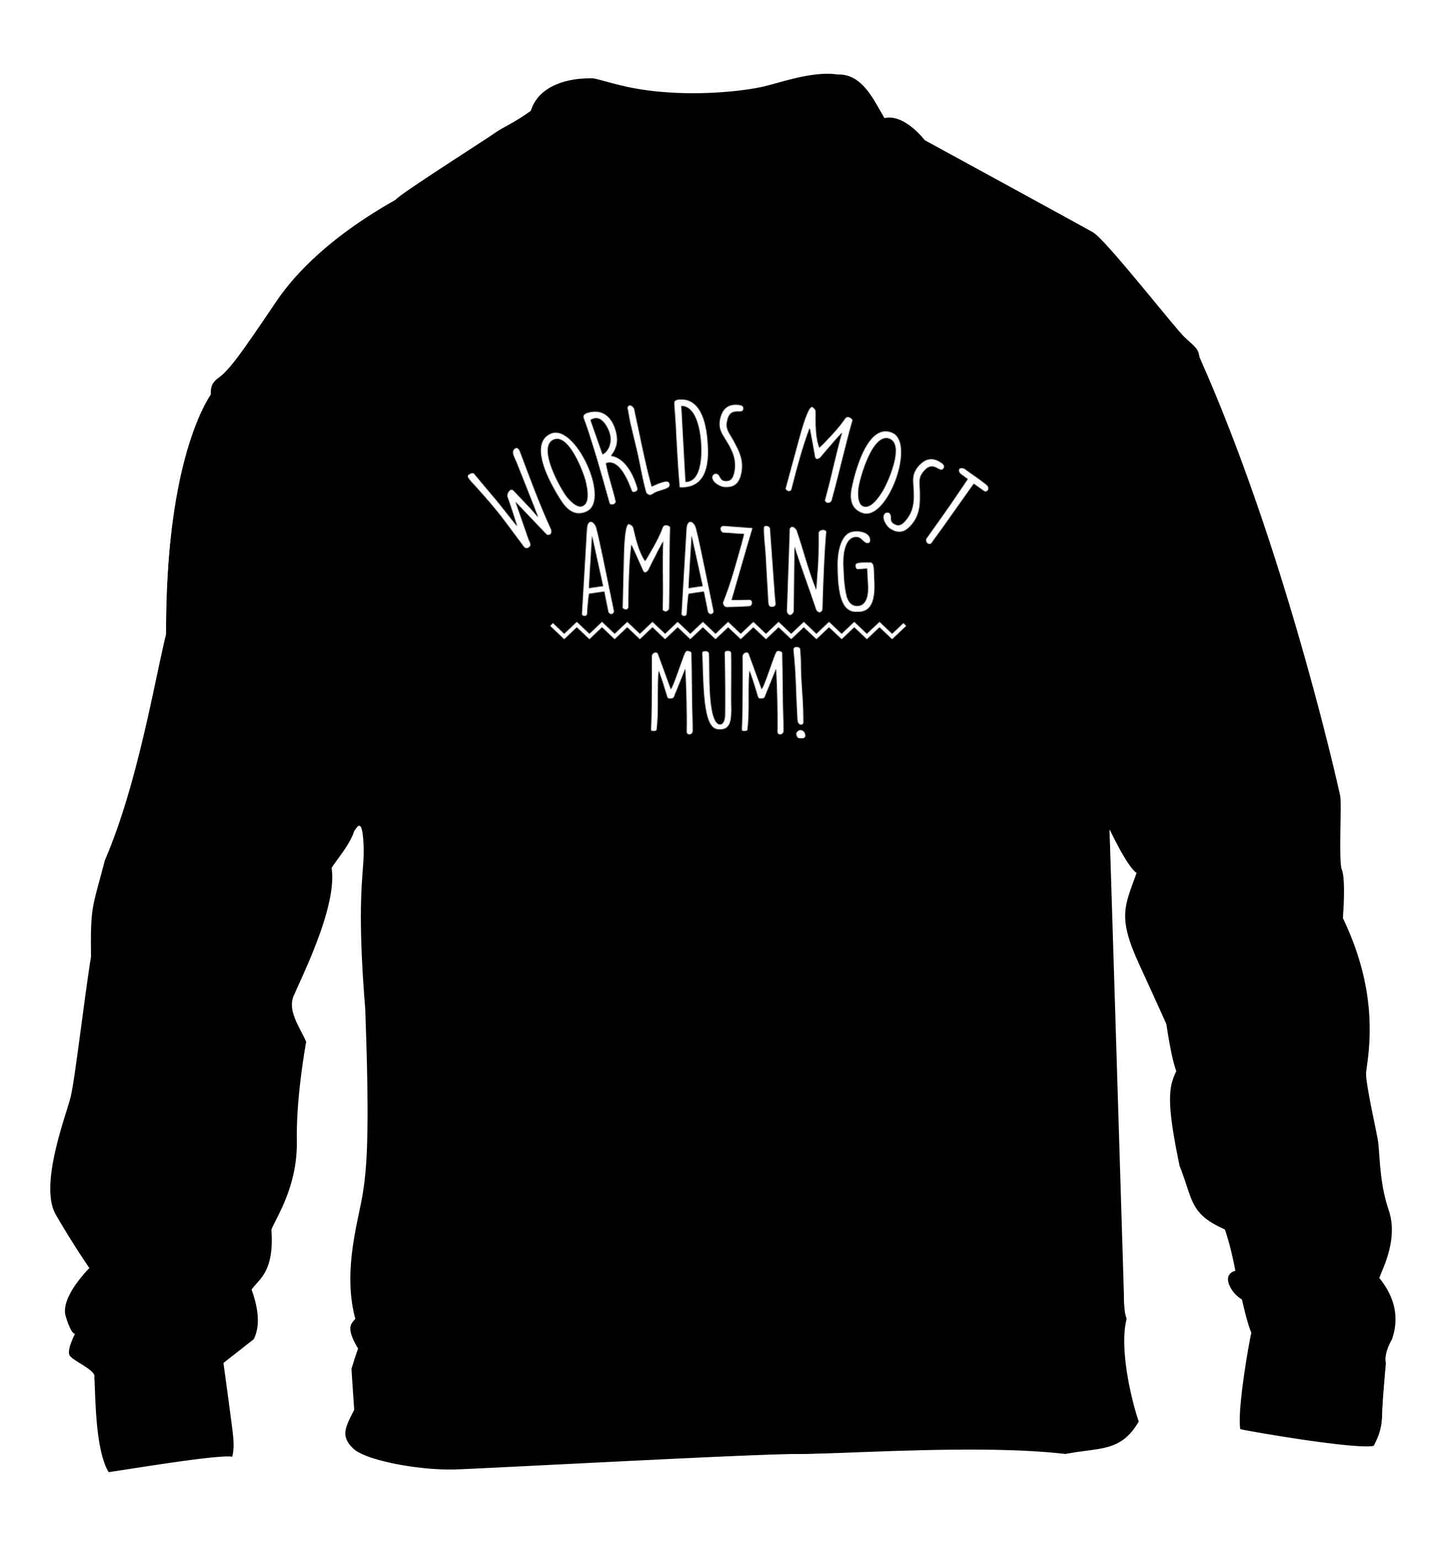 Worlds most amazing mum children's black sweater 12-13 Years